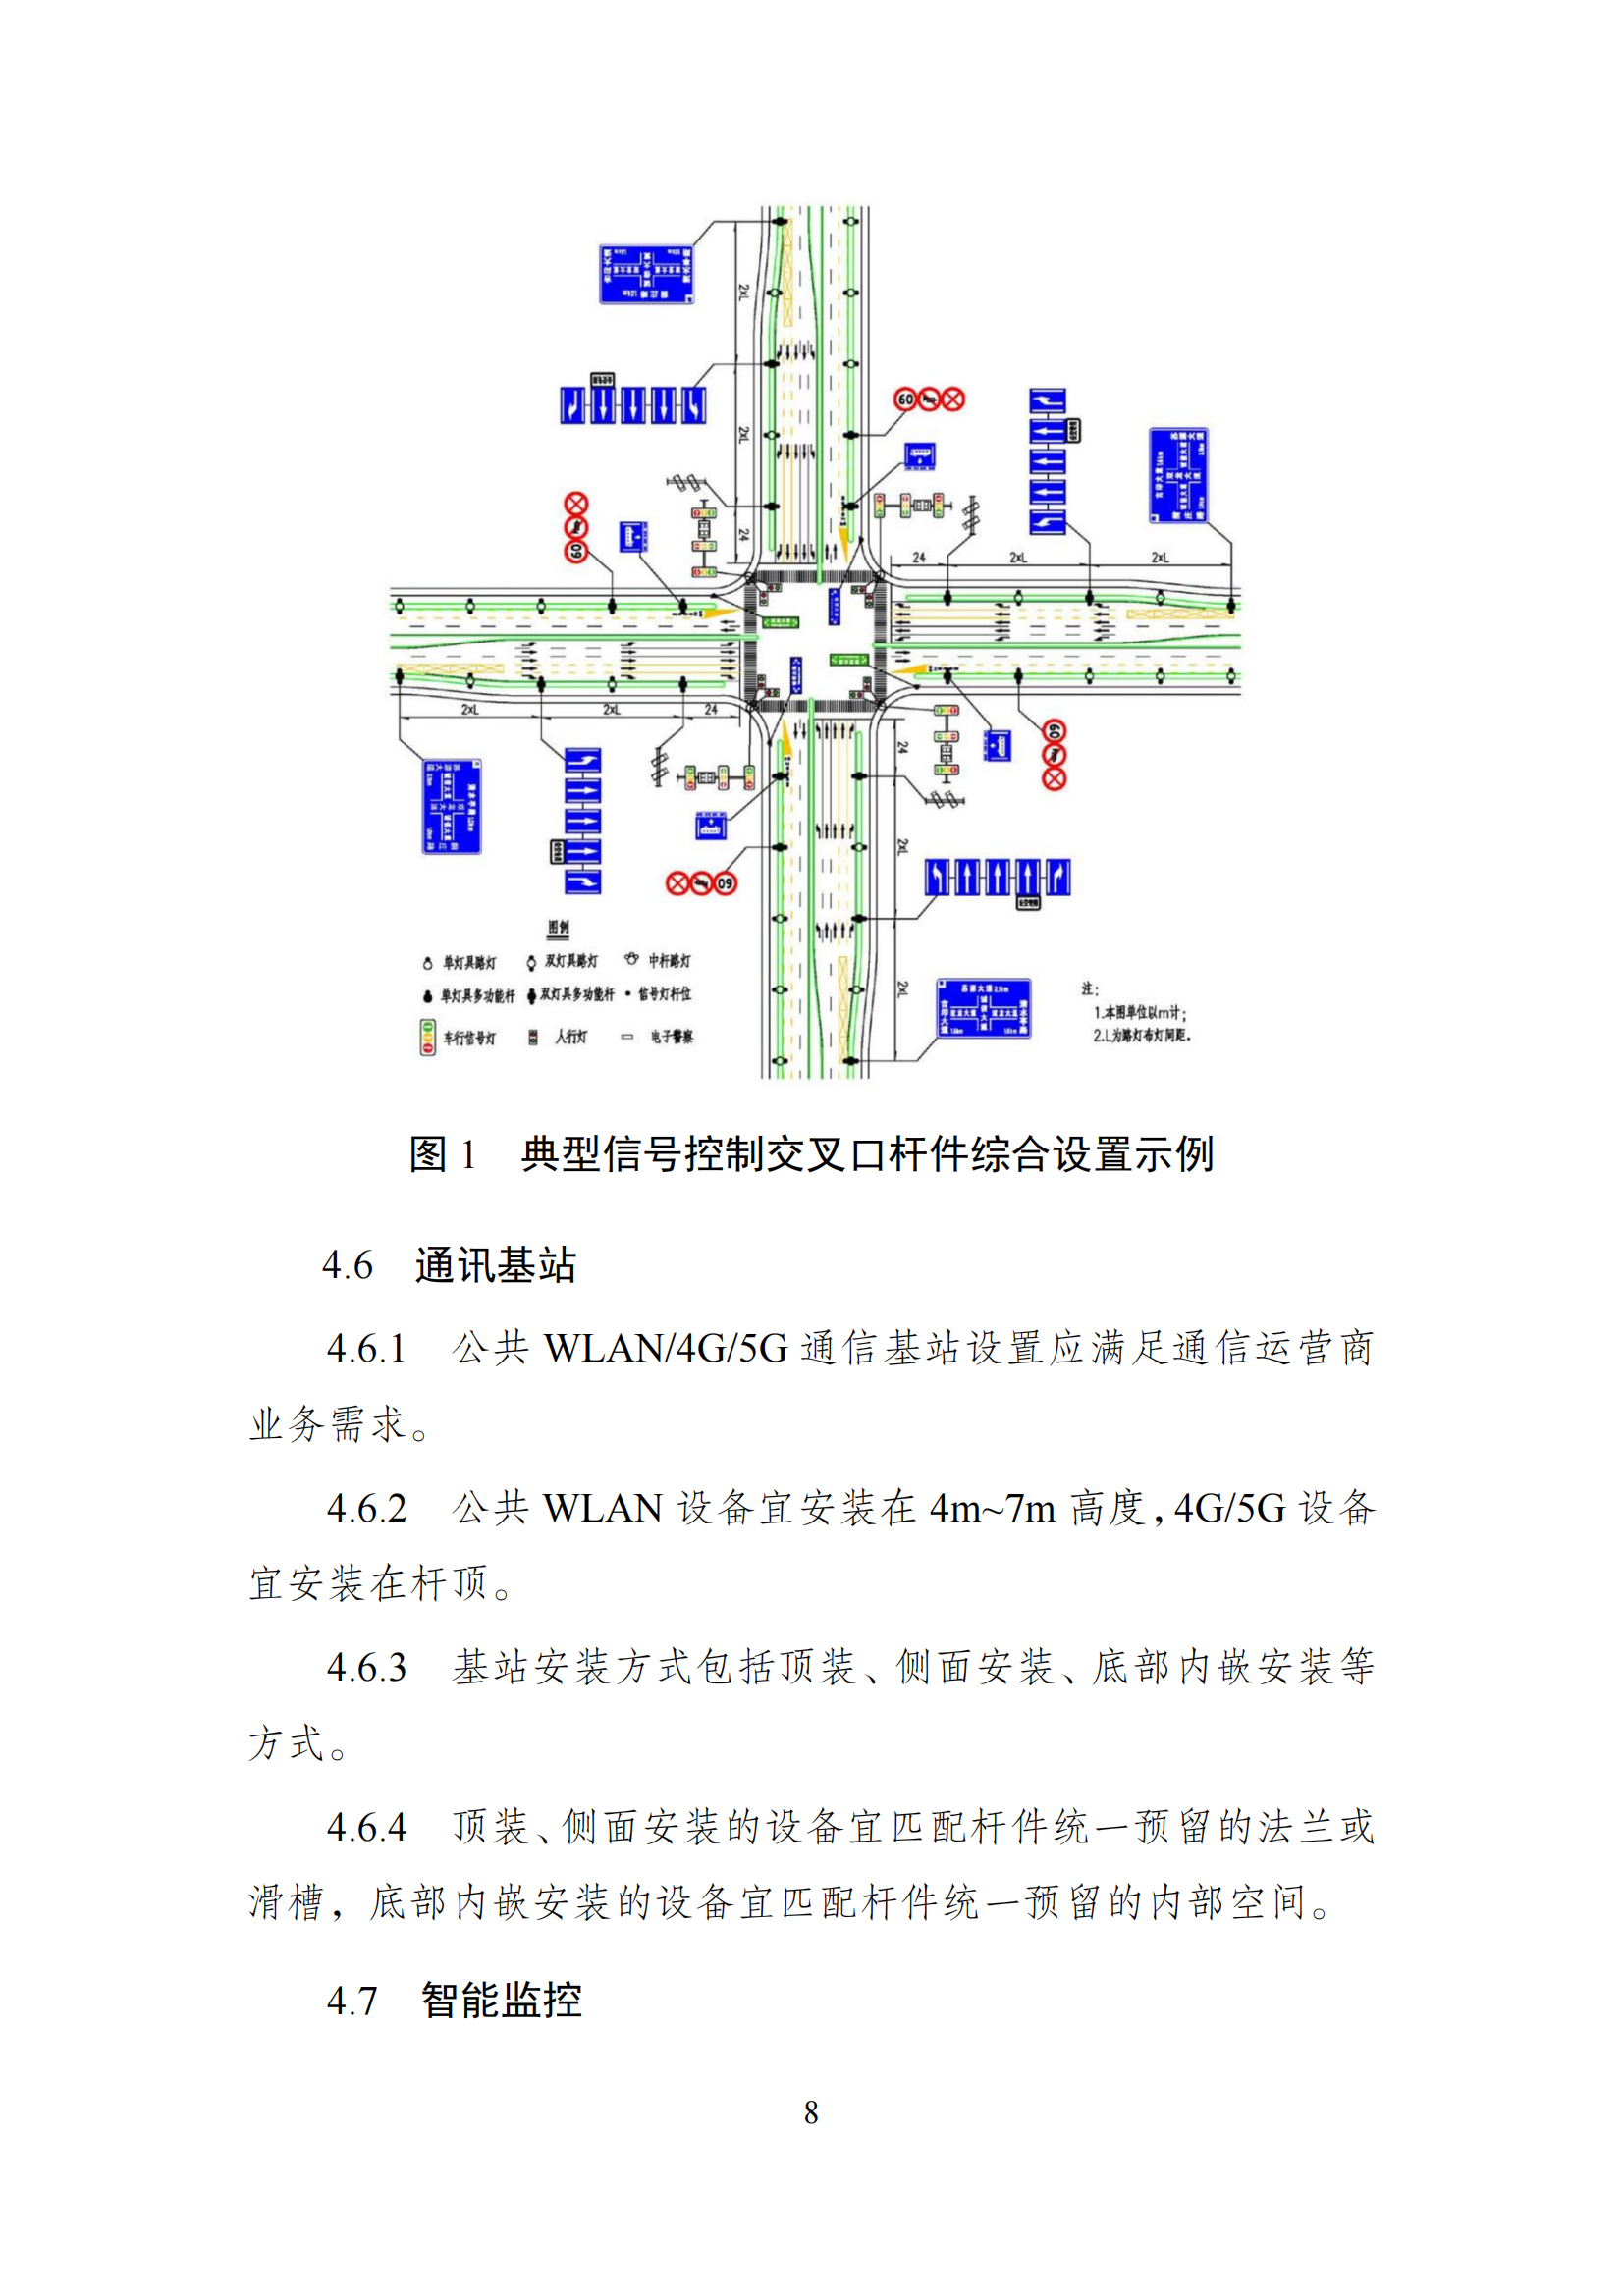 关于印发《扬州市城市照明智慧灯杆应用导则》的通知_11.png